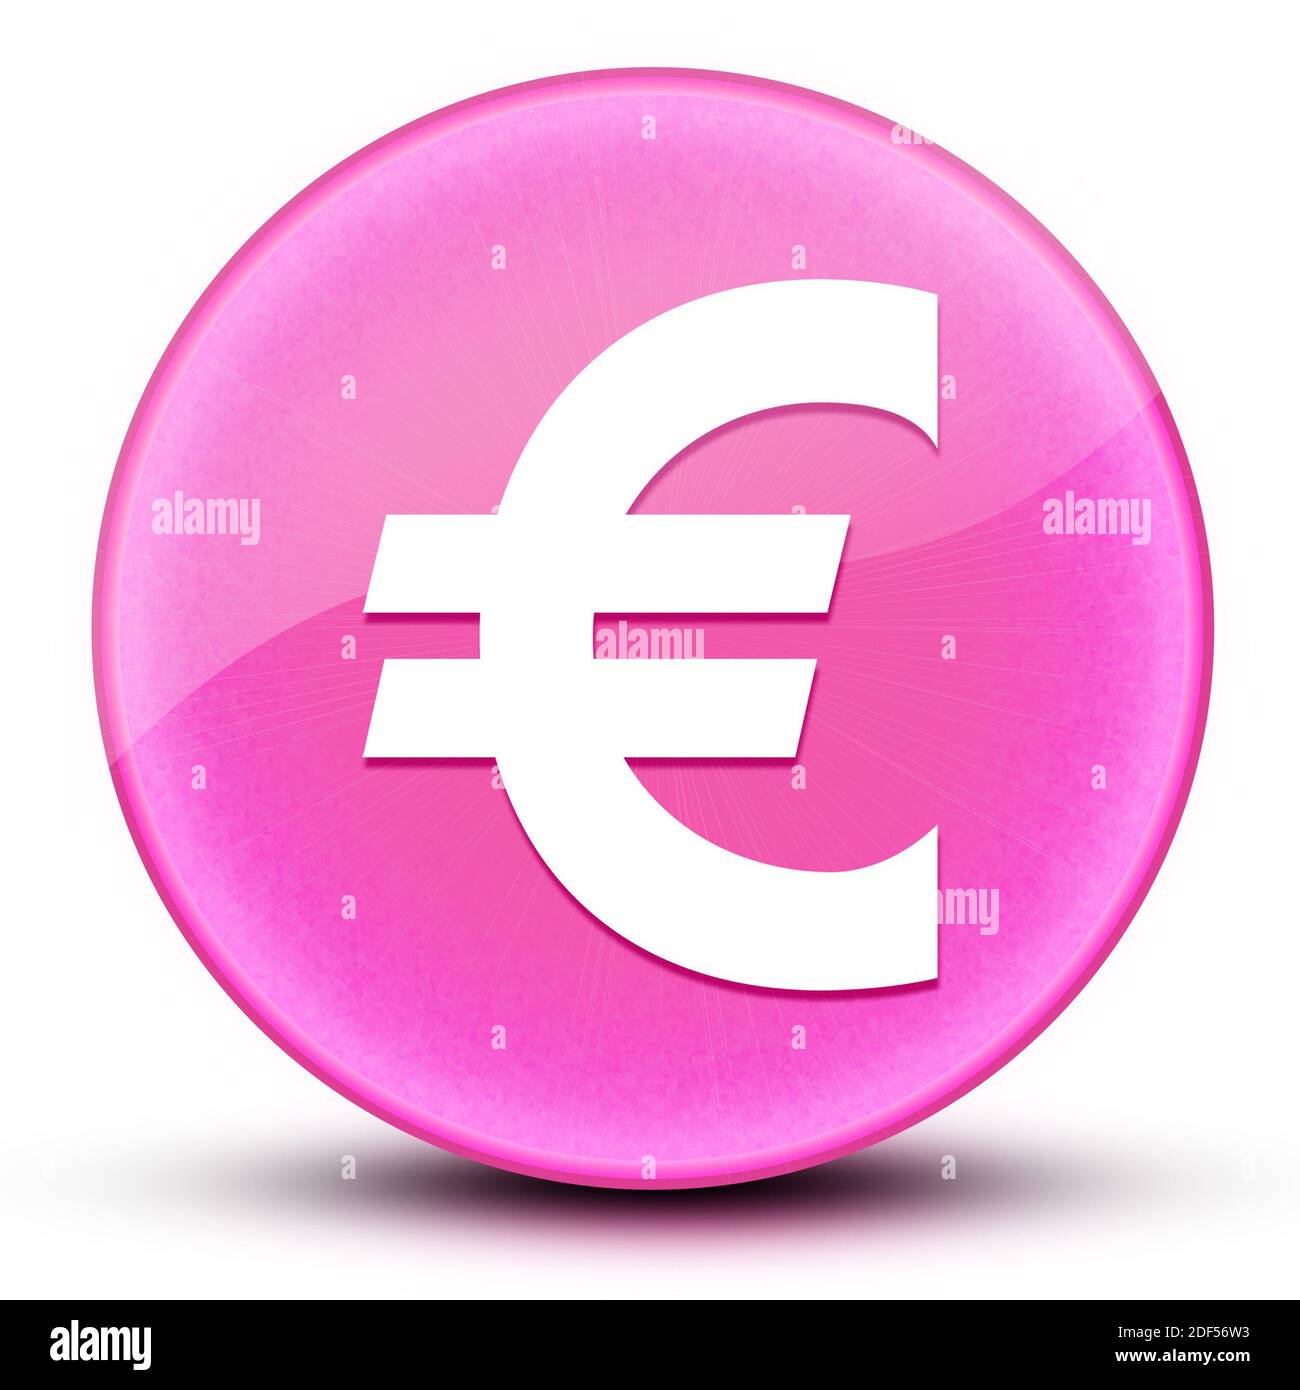 Euro segno eyeball lucido elegante rosa pulsante rotondo illustrazione astratta Foto Stock